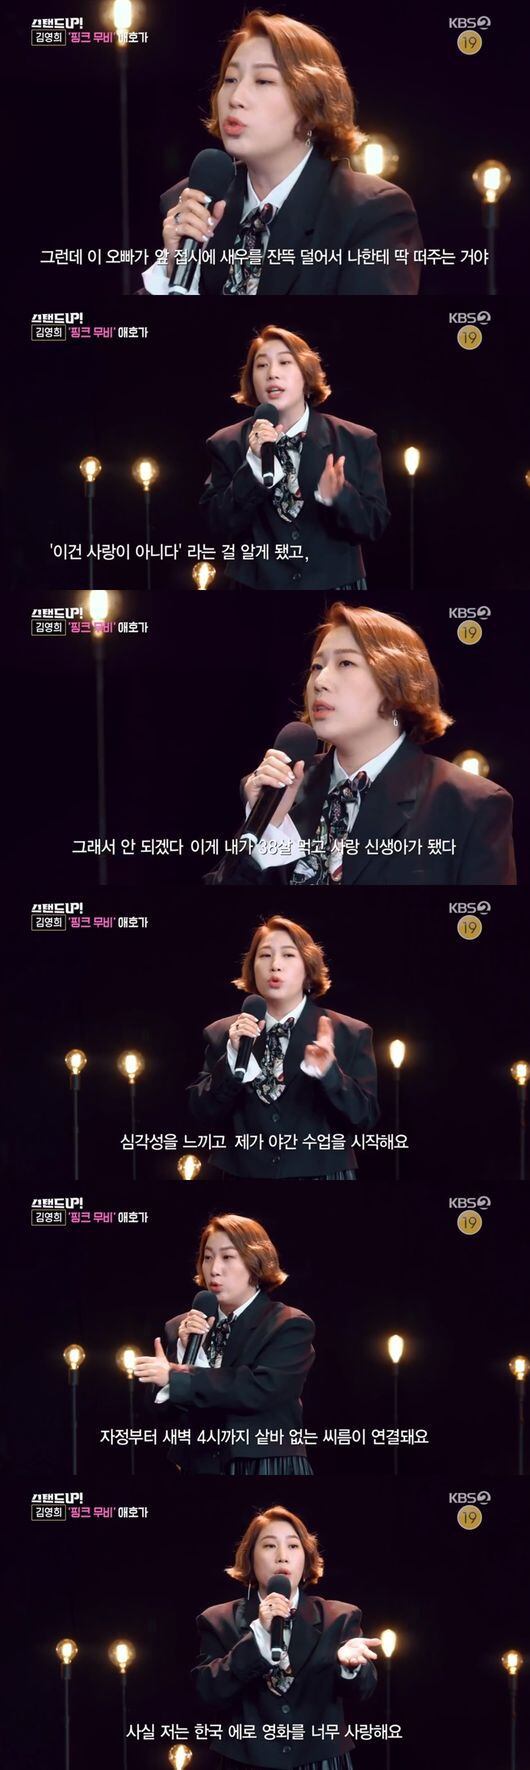 스탠드업' 김영희, 에로영화 매니아→감독 데뷔 준비중! (ft.에로배우 민도윤) [어저께TV]